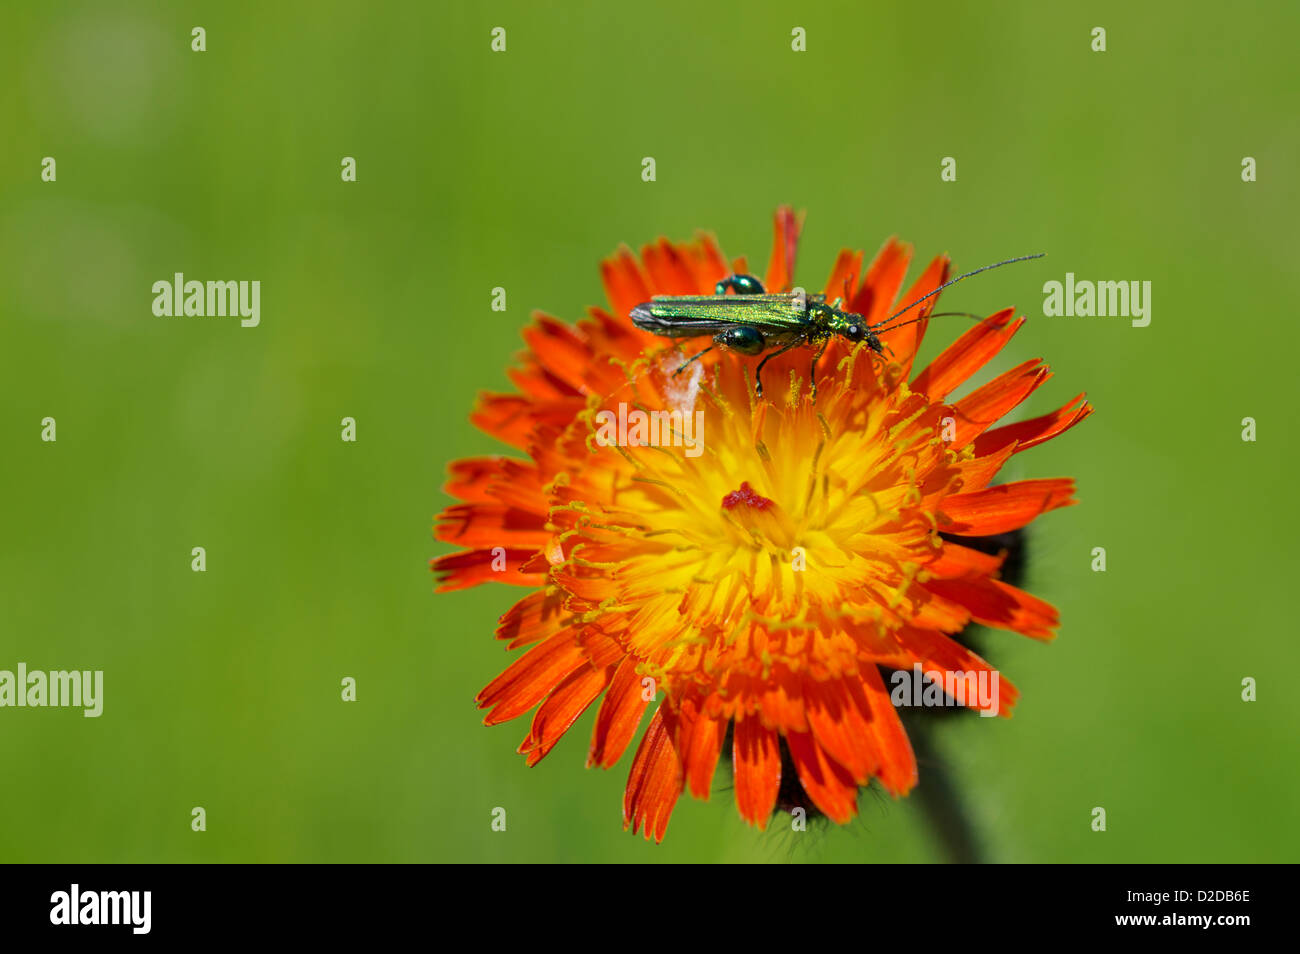 Oedemera Nobilis der dicken Beinen Blume Käfer auf Orange Habichtskraut Stockfoto